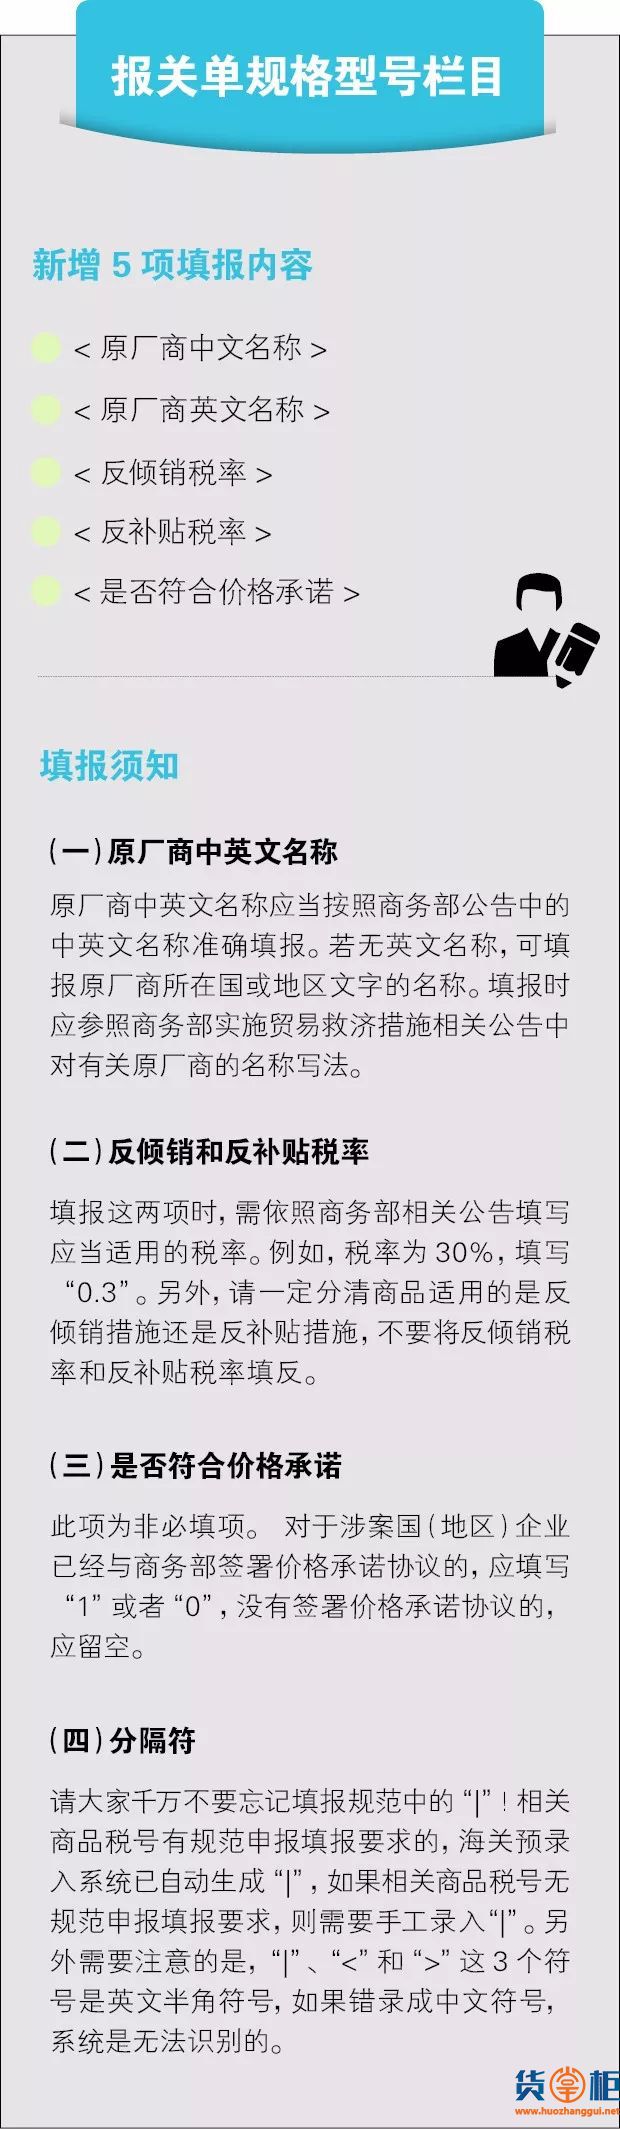 实施贸易救济措施货物进口报关单自动计税有关事项的公告-货掌柜www.huozhanggui.net